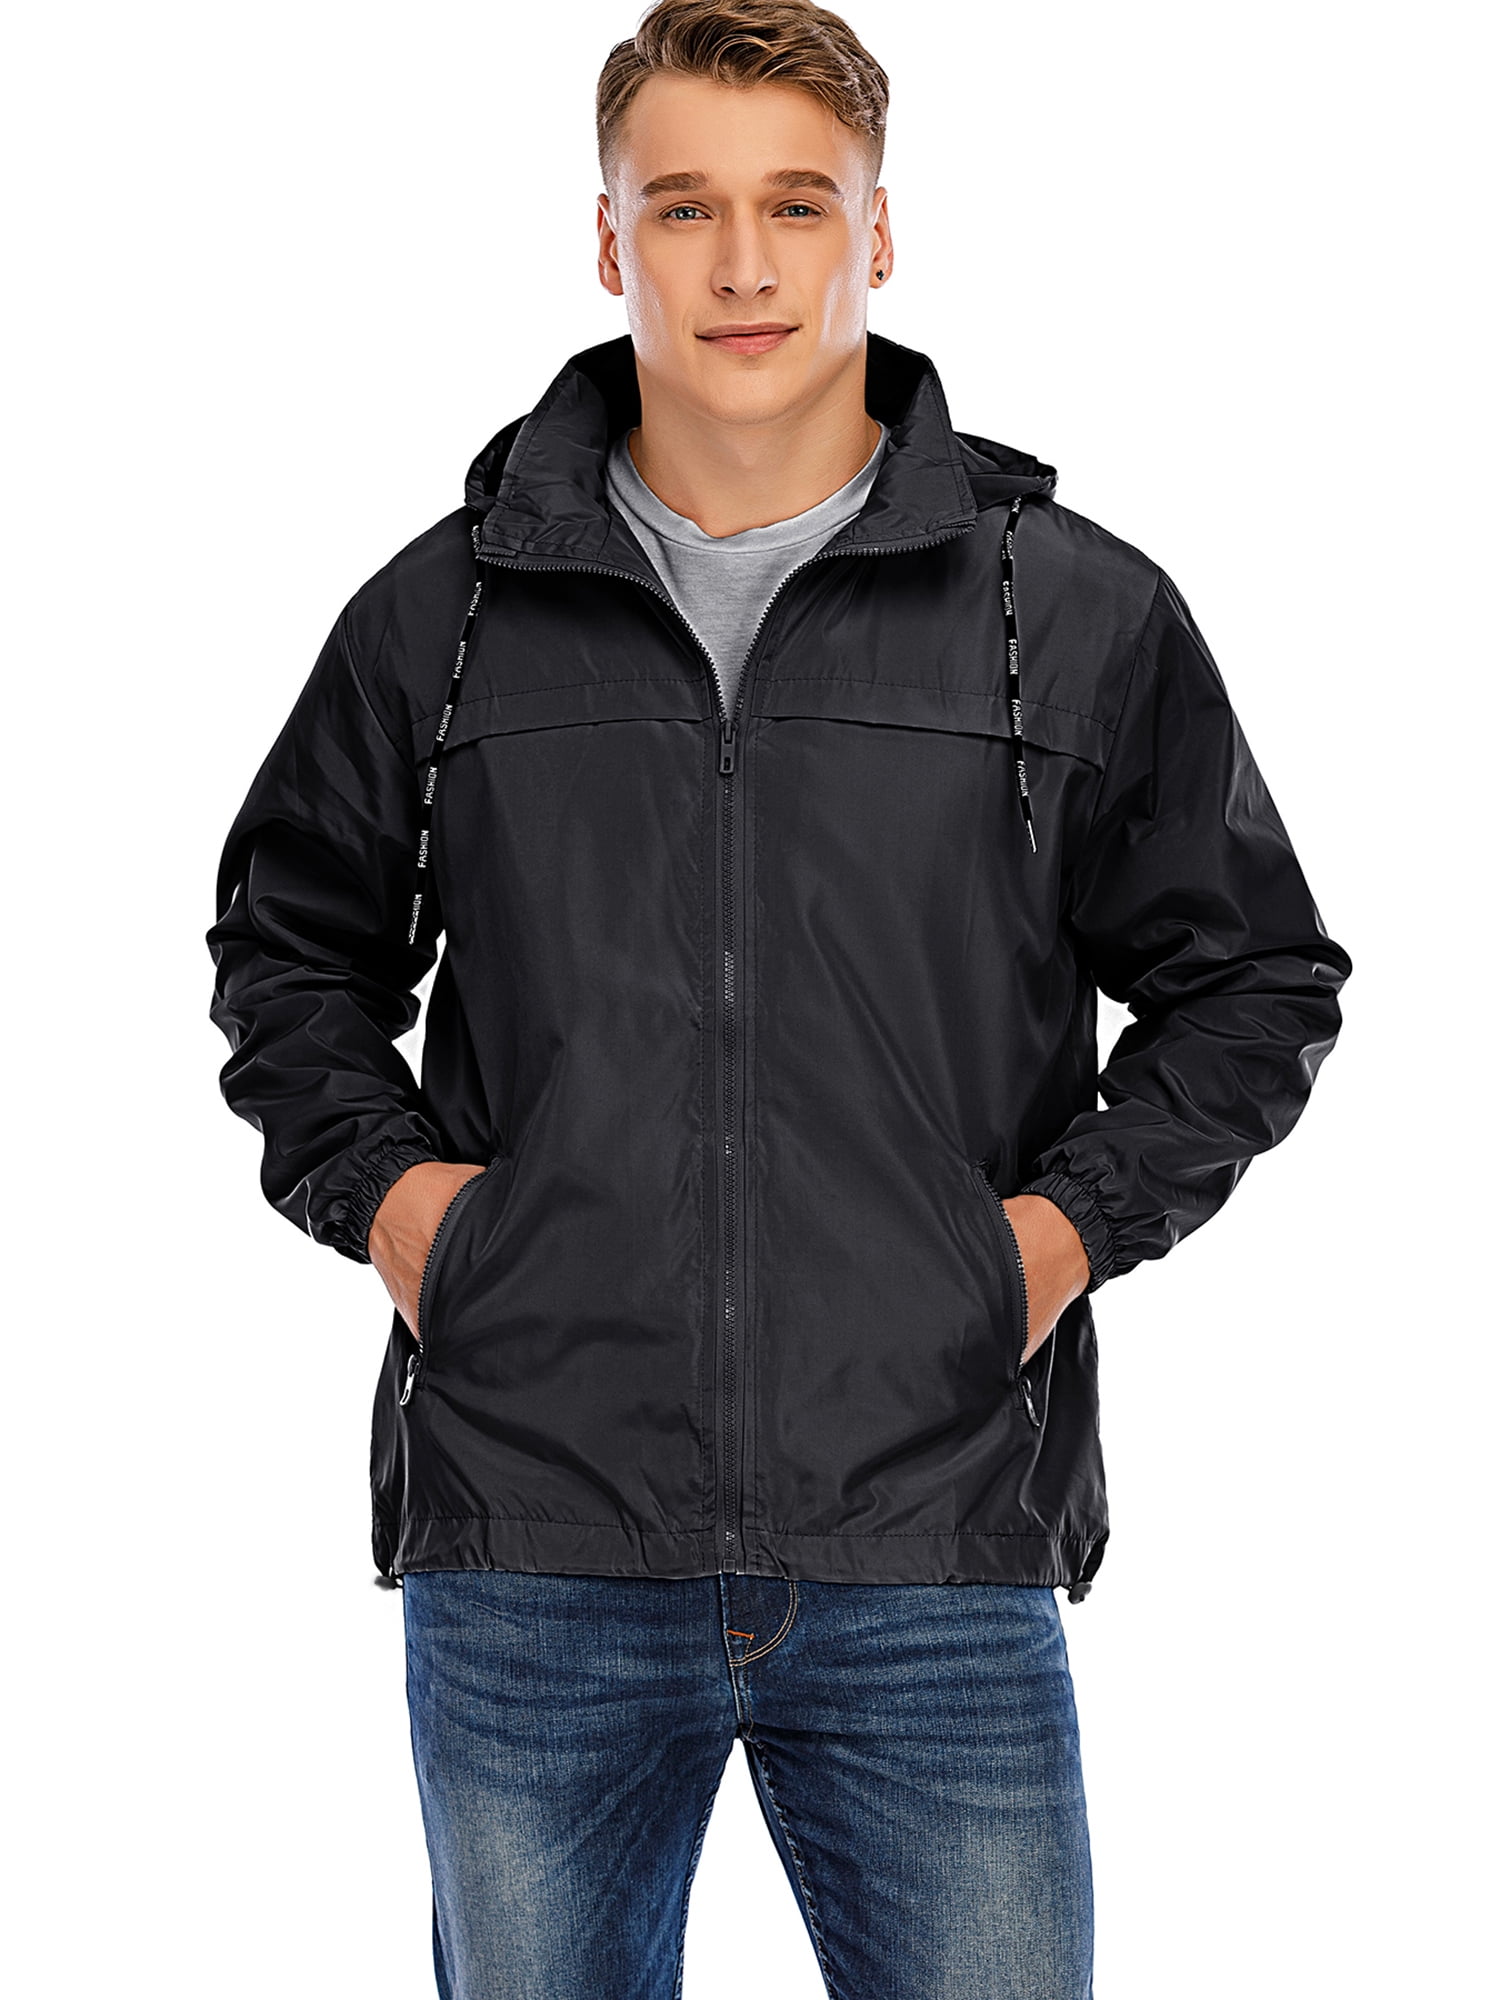 Men Hooded Waterproof Outdoor Jacket Lightweight Rain Jacket Windproof